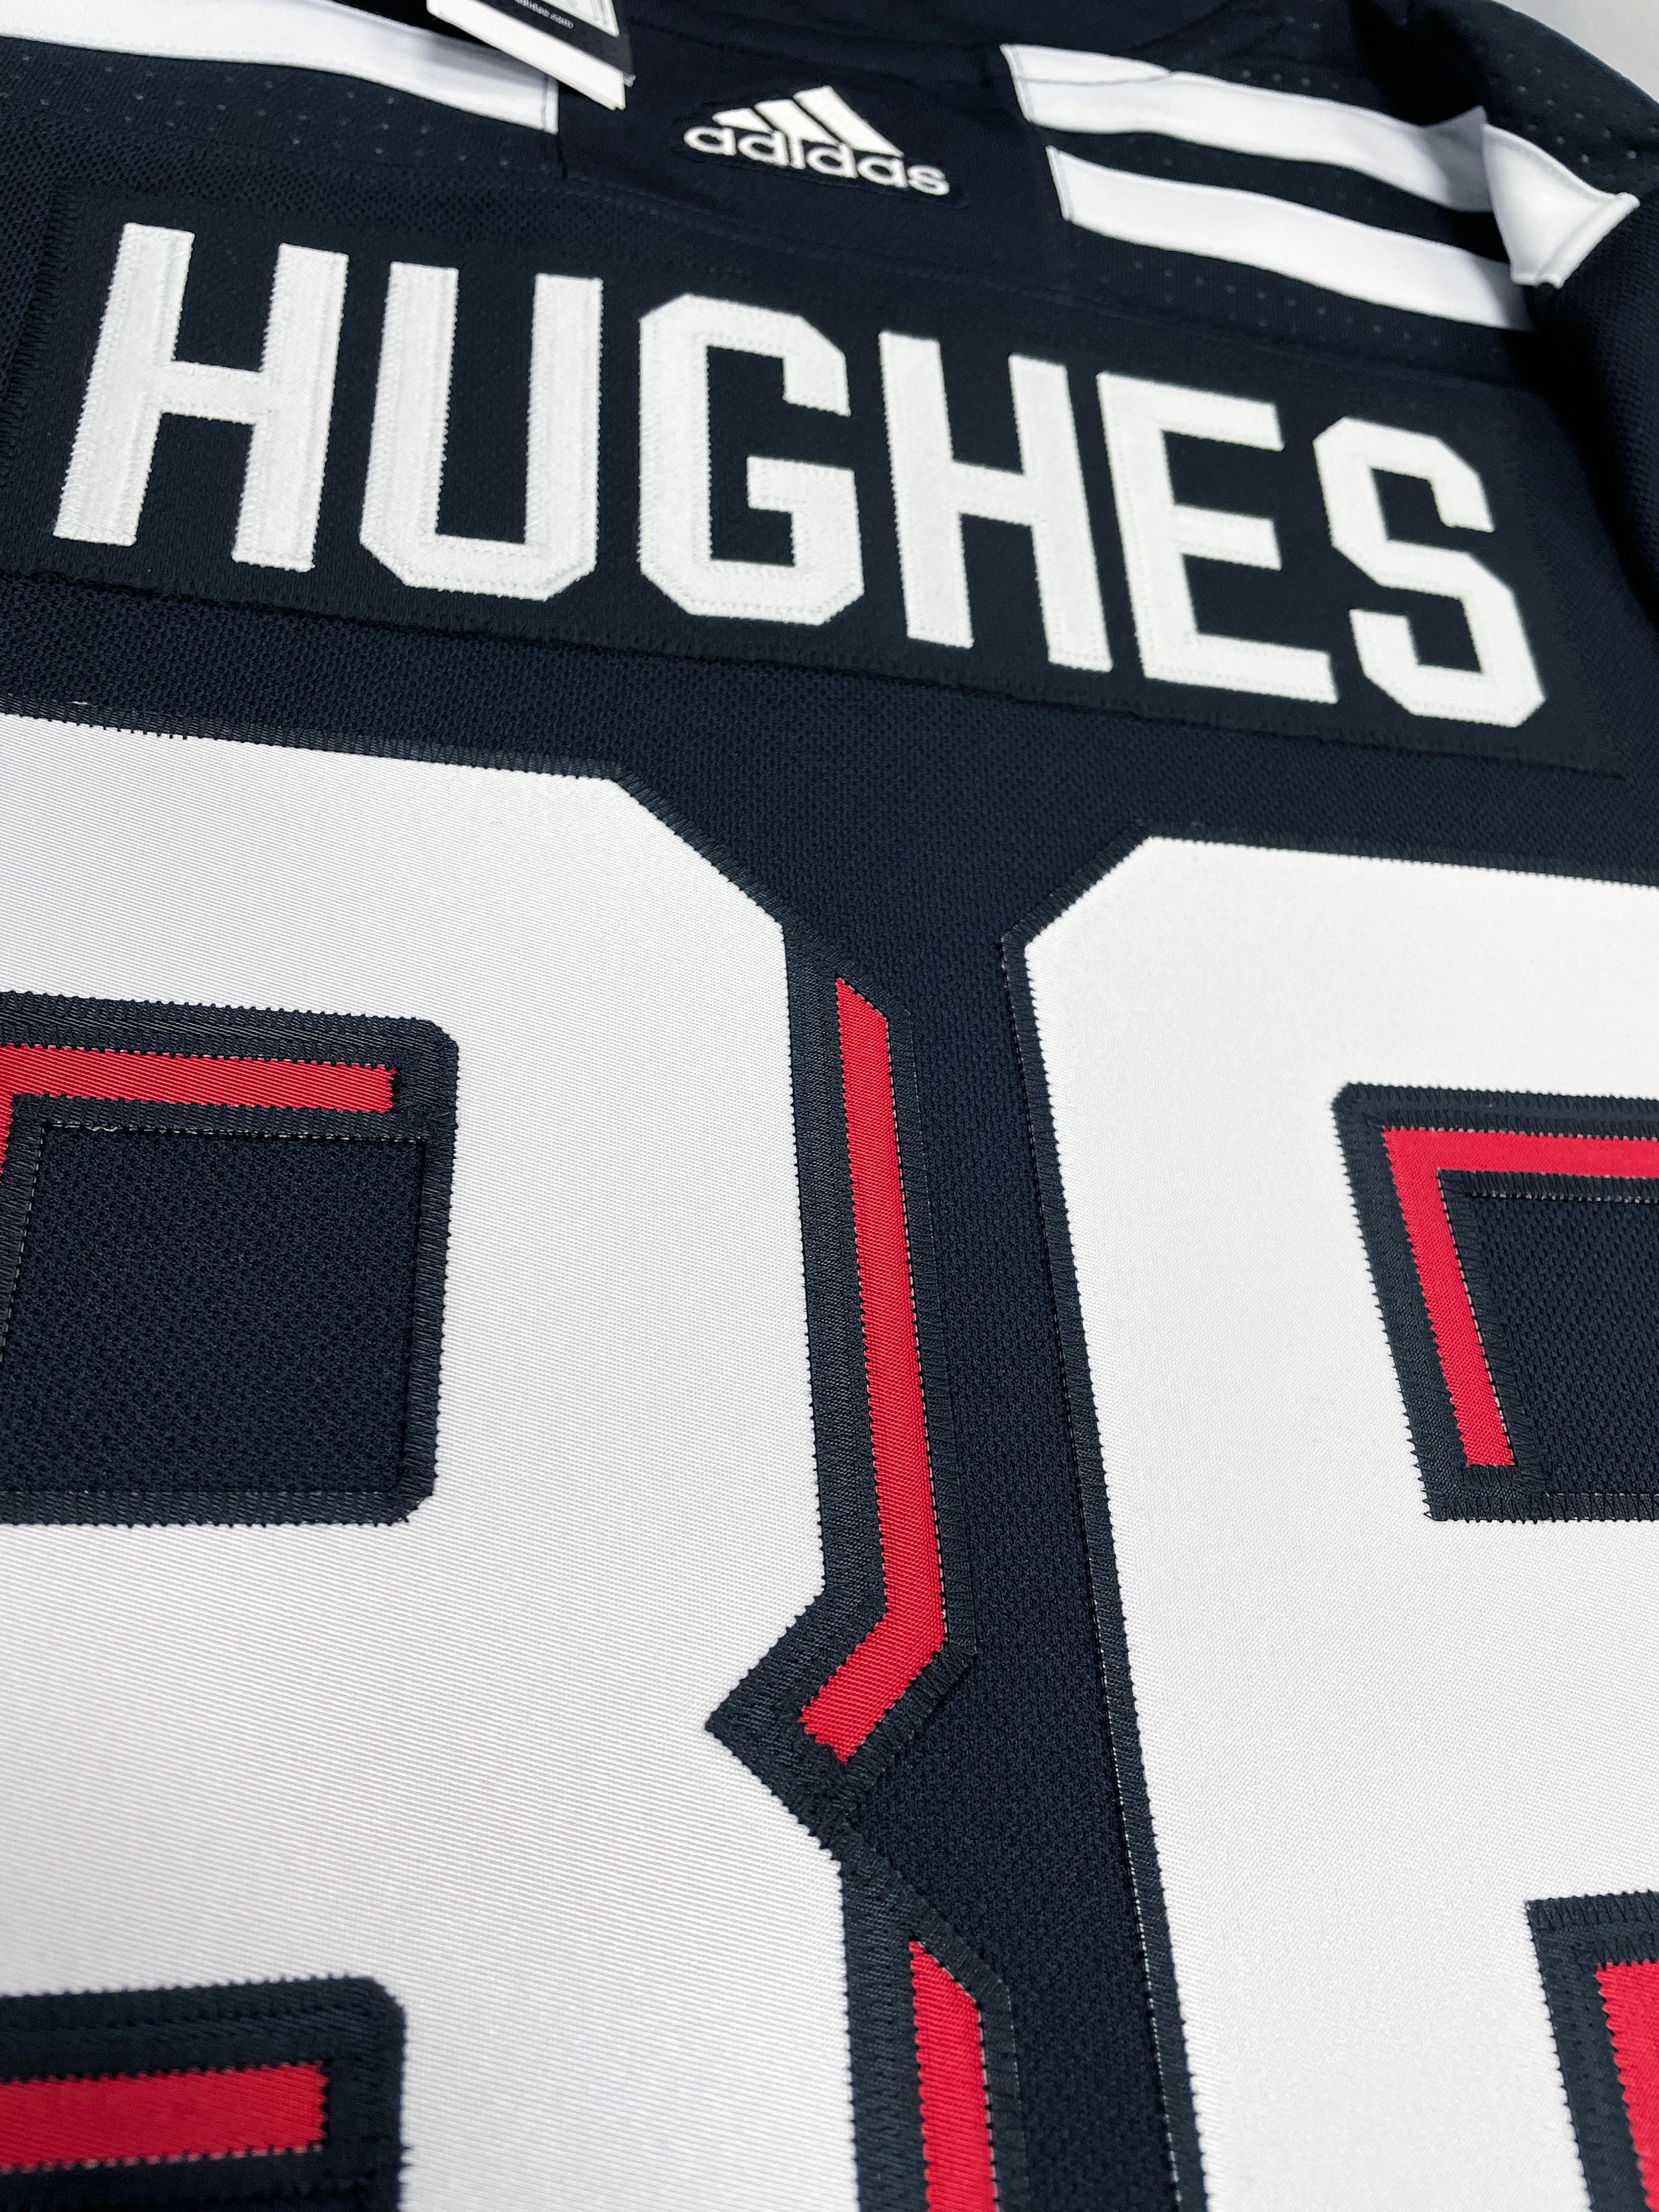 Jack Hughes New Jersey Devils hockey Jersey size 52